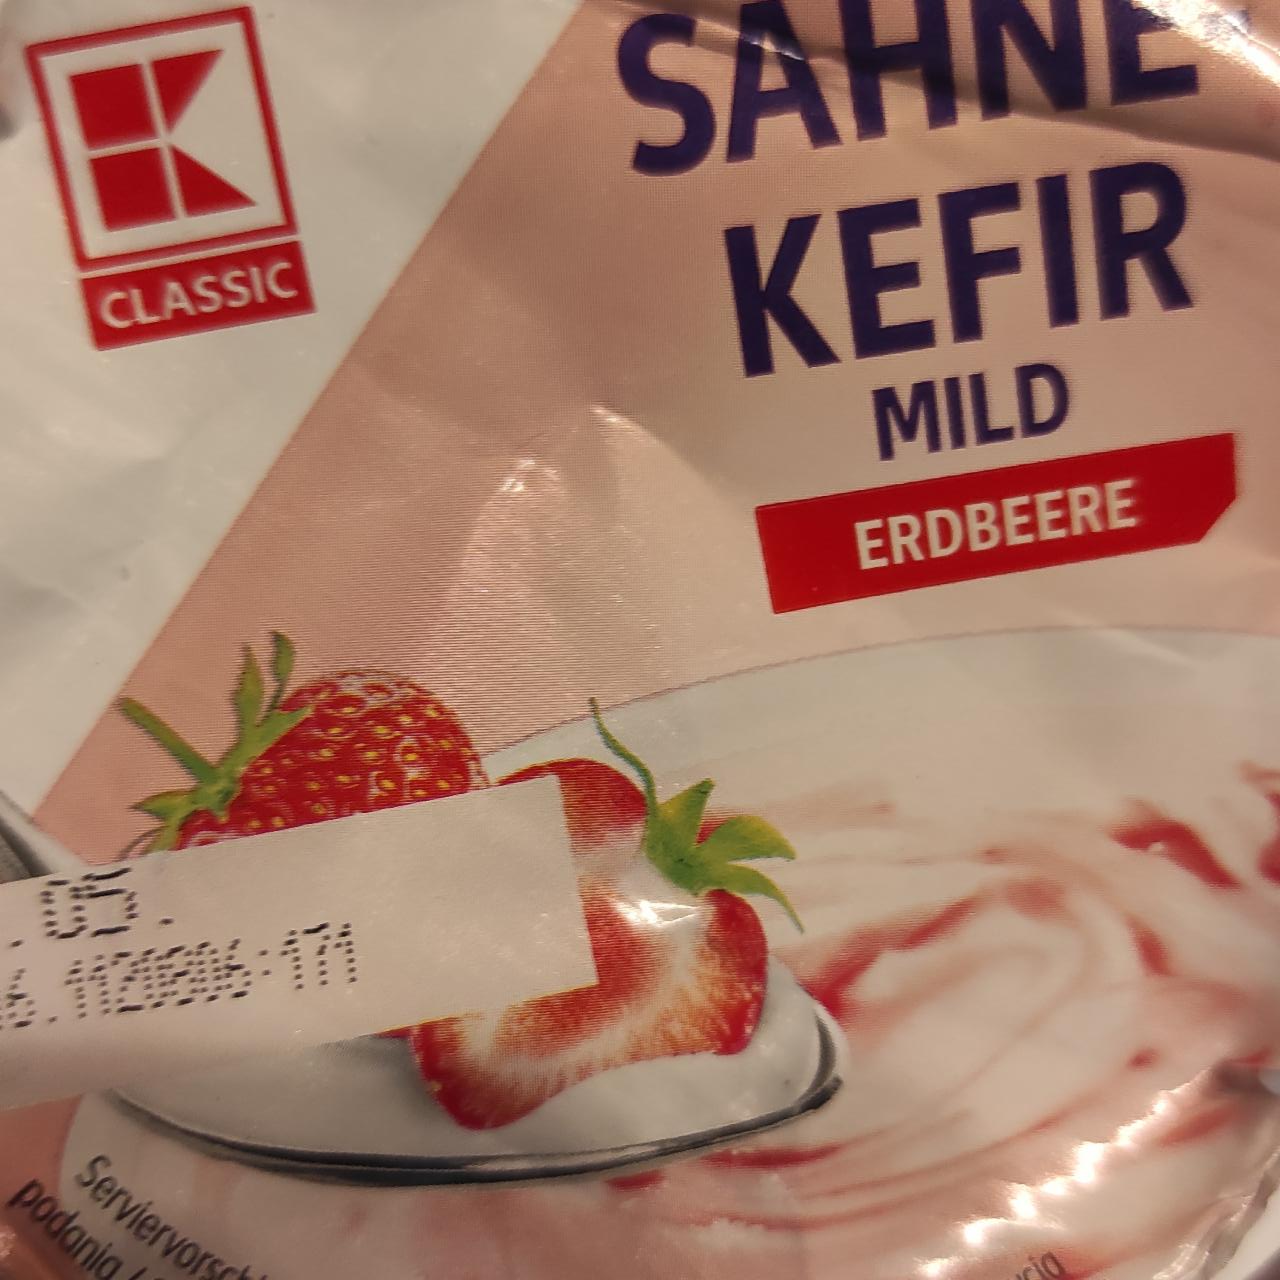 Фото - Kremowy kefir słodzony, ze wsadem truskawkowym K-Classic